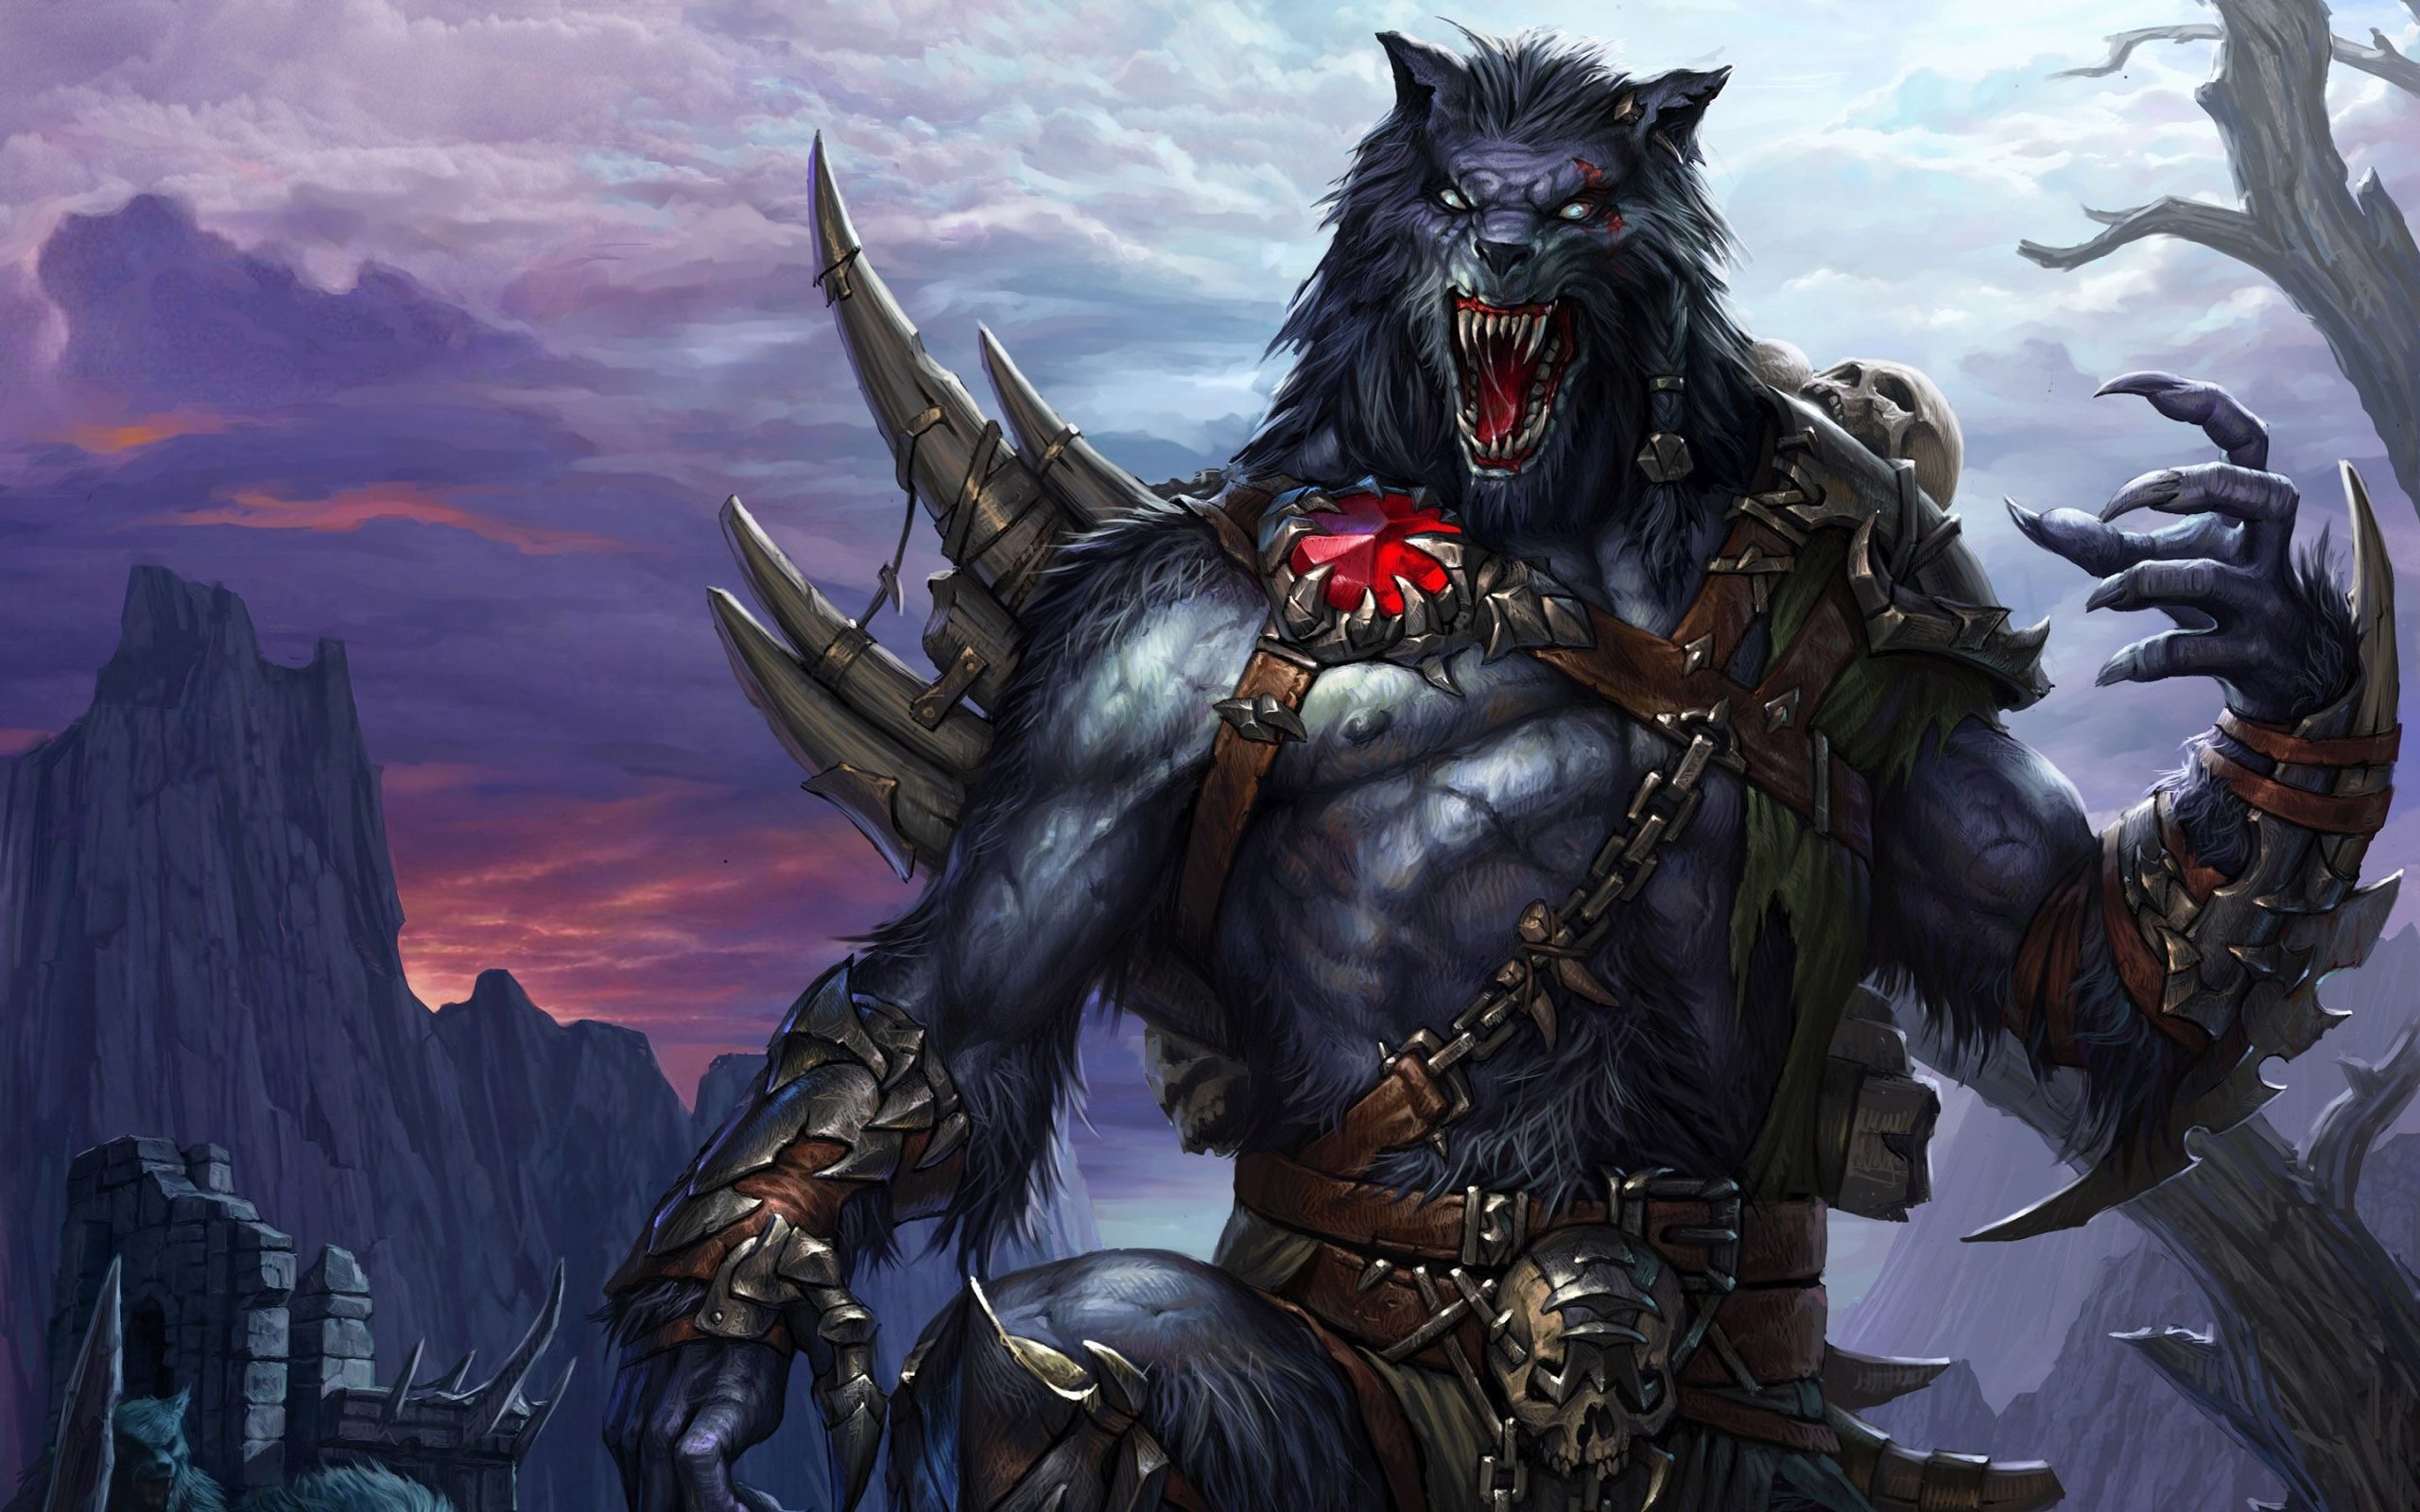 Werewolf wallpaper, Captivating design, Intriguing creature, Striking visuals, 2560x1600 HD Desktop